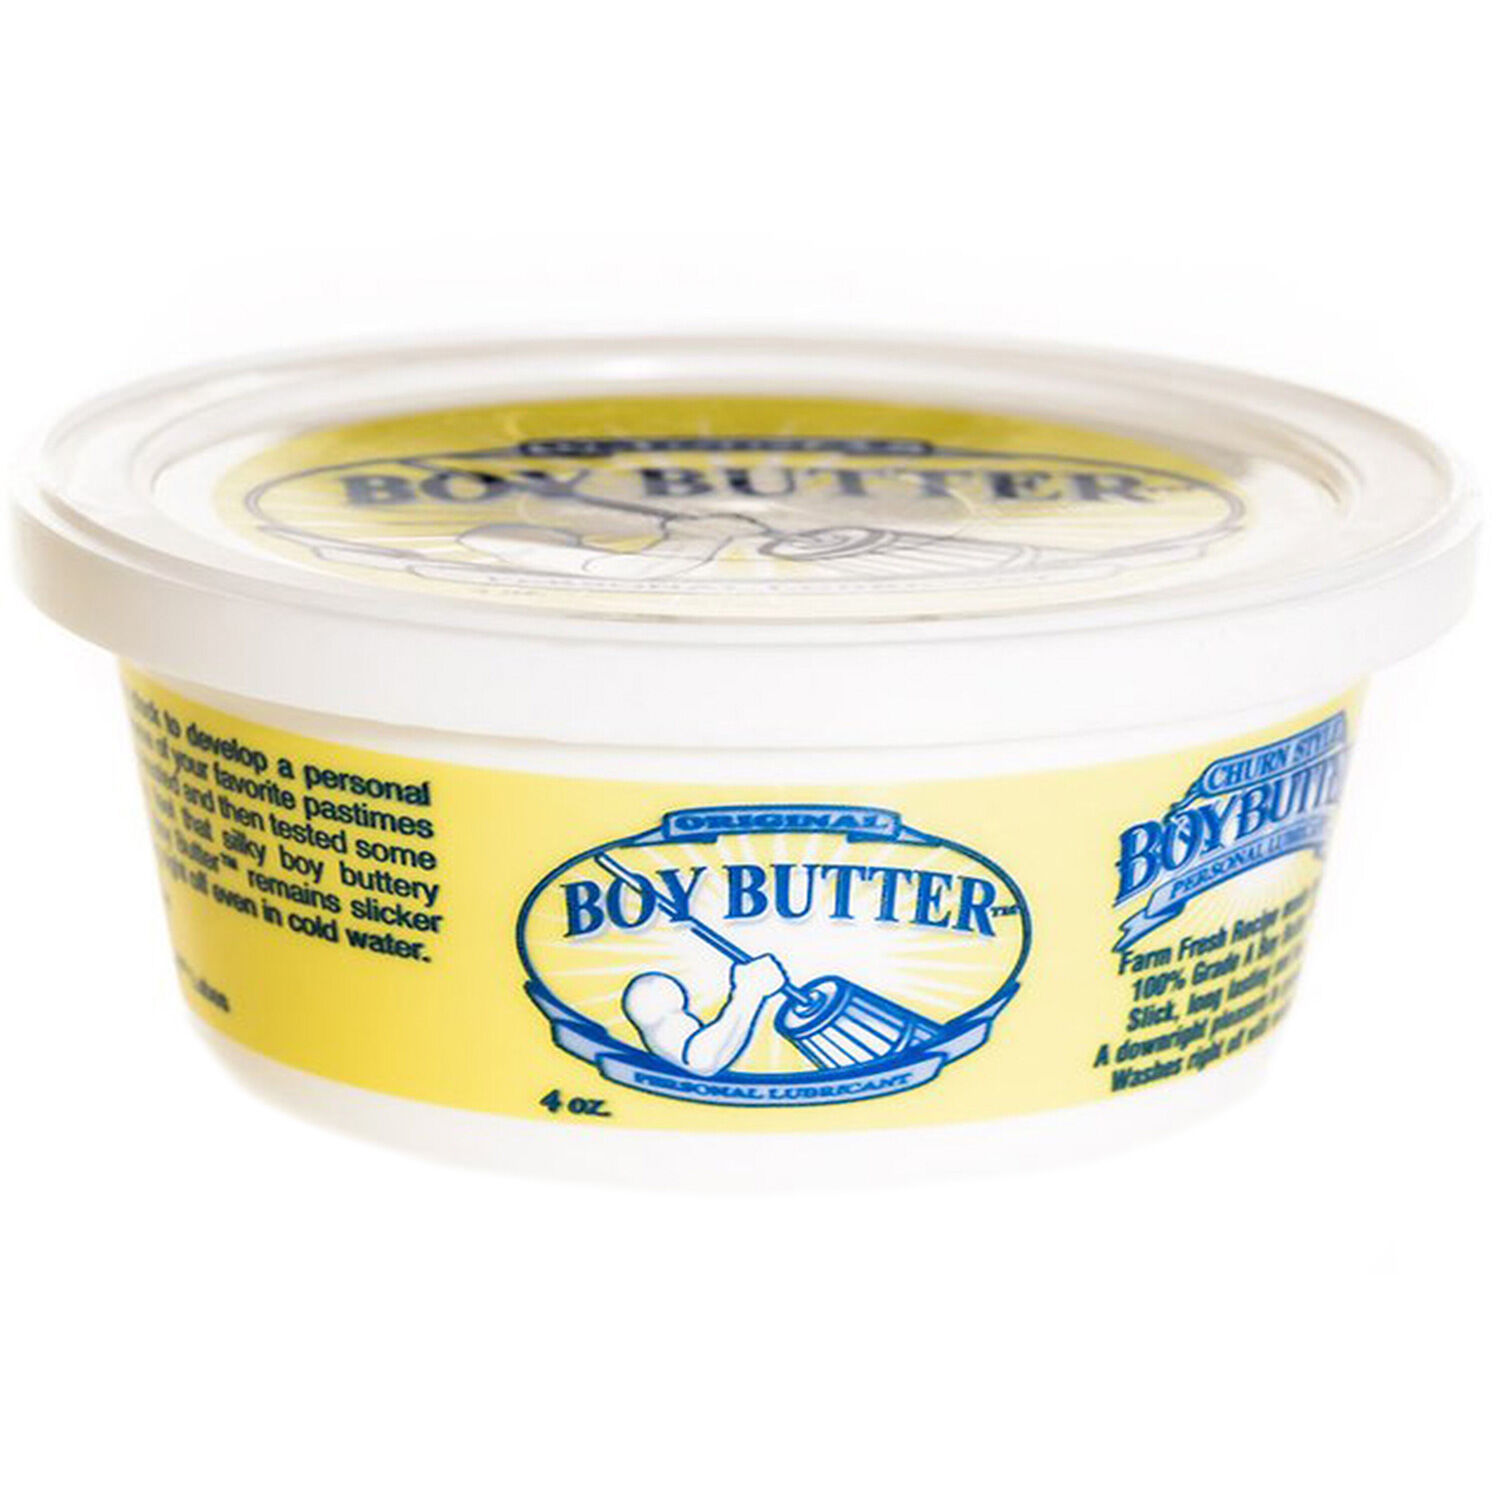 Boy Butter Original Glidemiddel